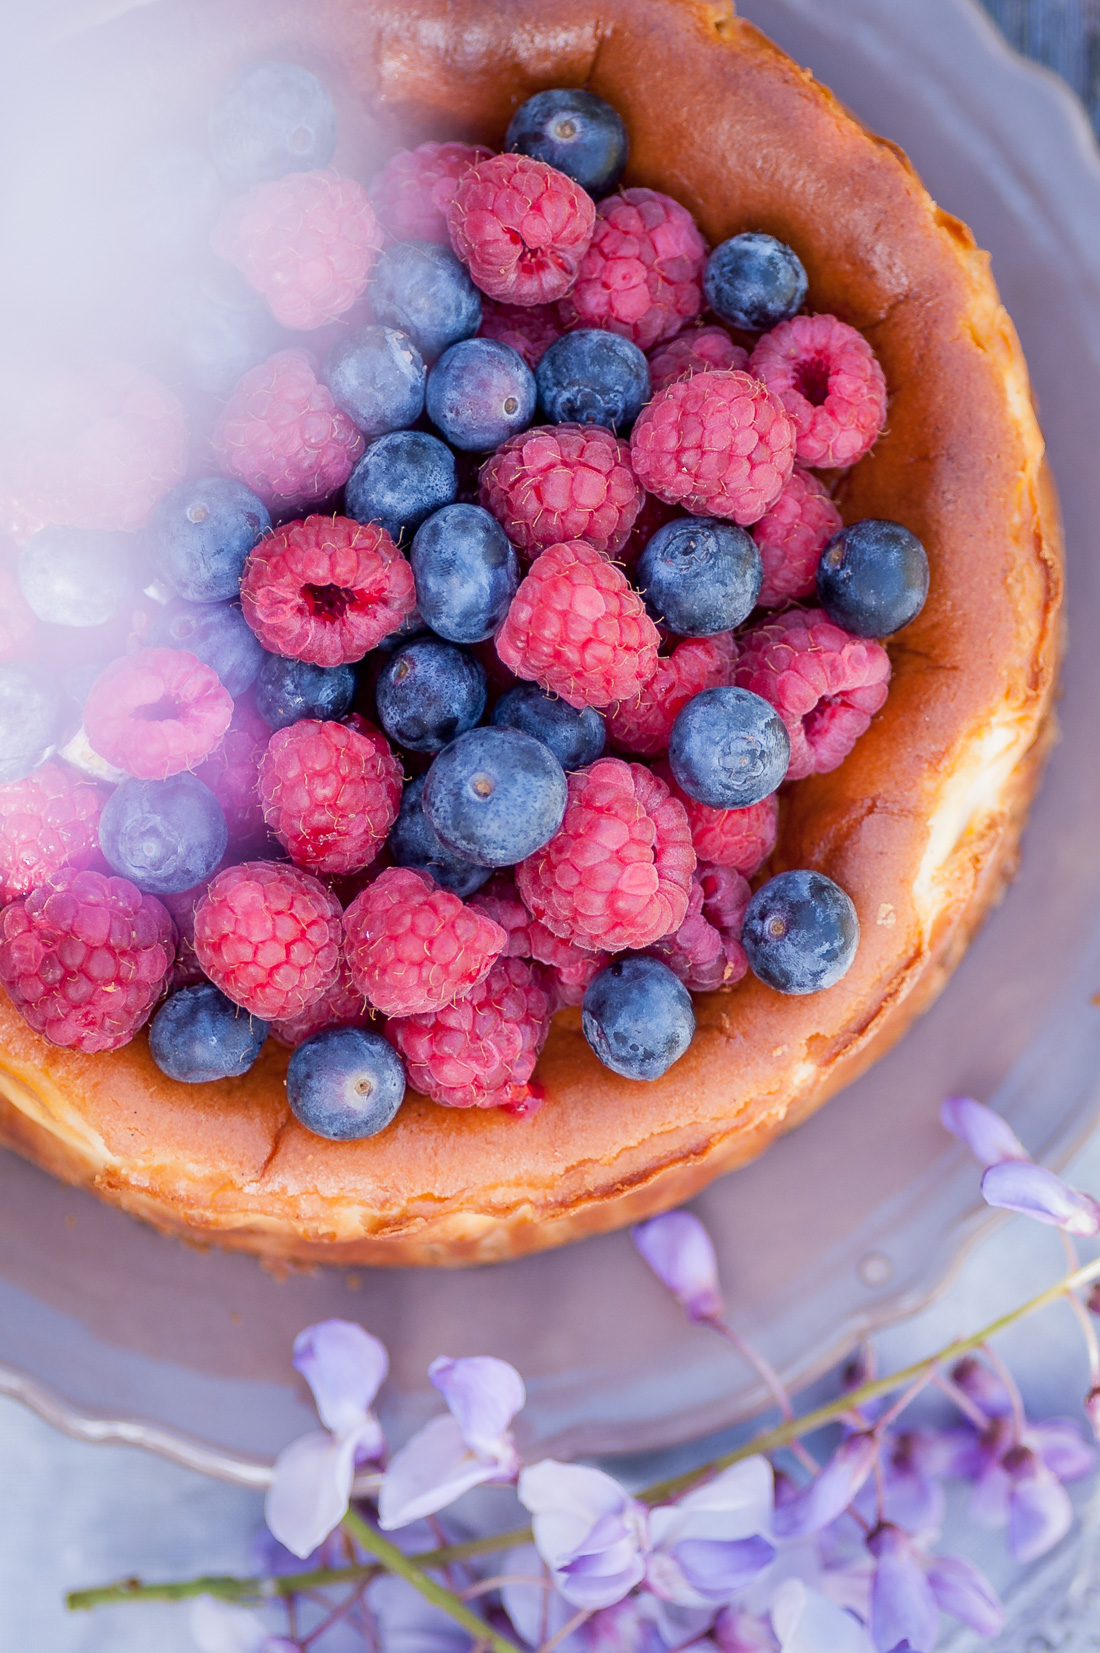 Rustic Cheesecake with Almonds and Fresh Berries by Eve | nordbrise.net (Cremiger Käsekuchen mit Mandeln und fruchtigen Beeren)